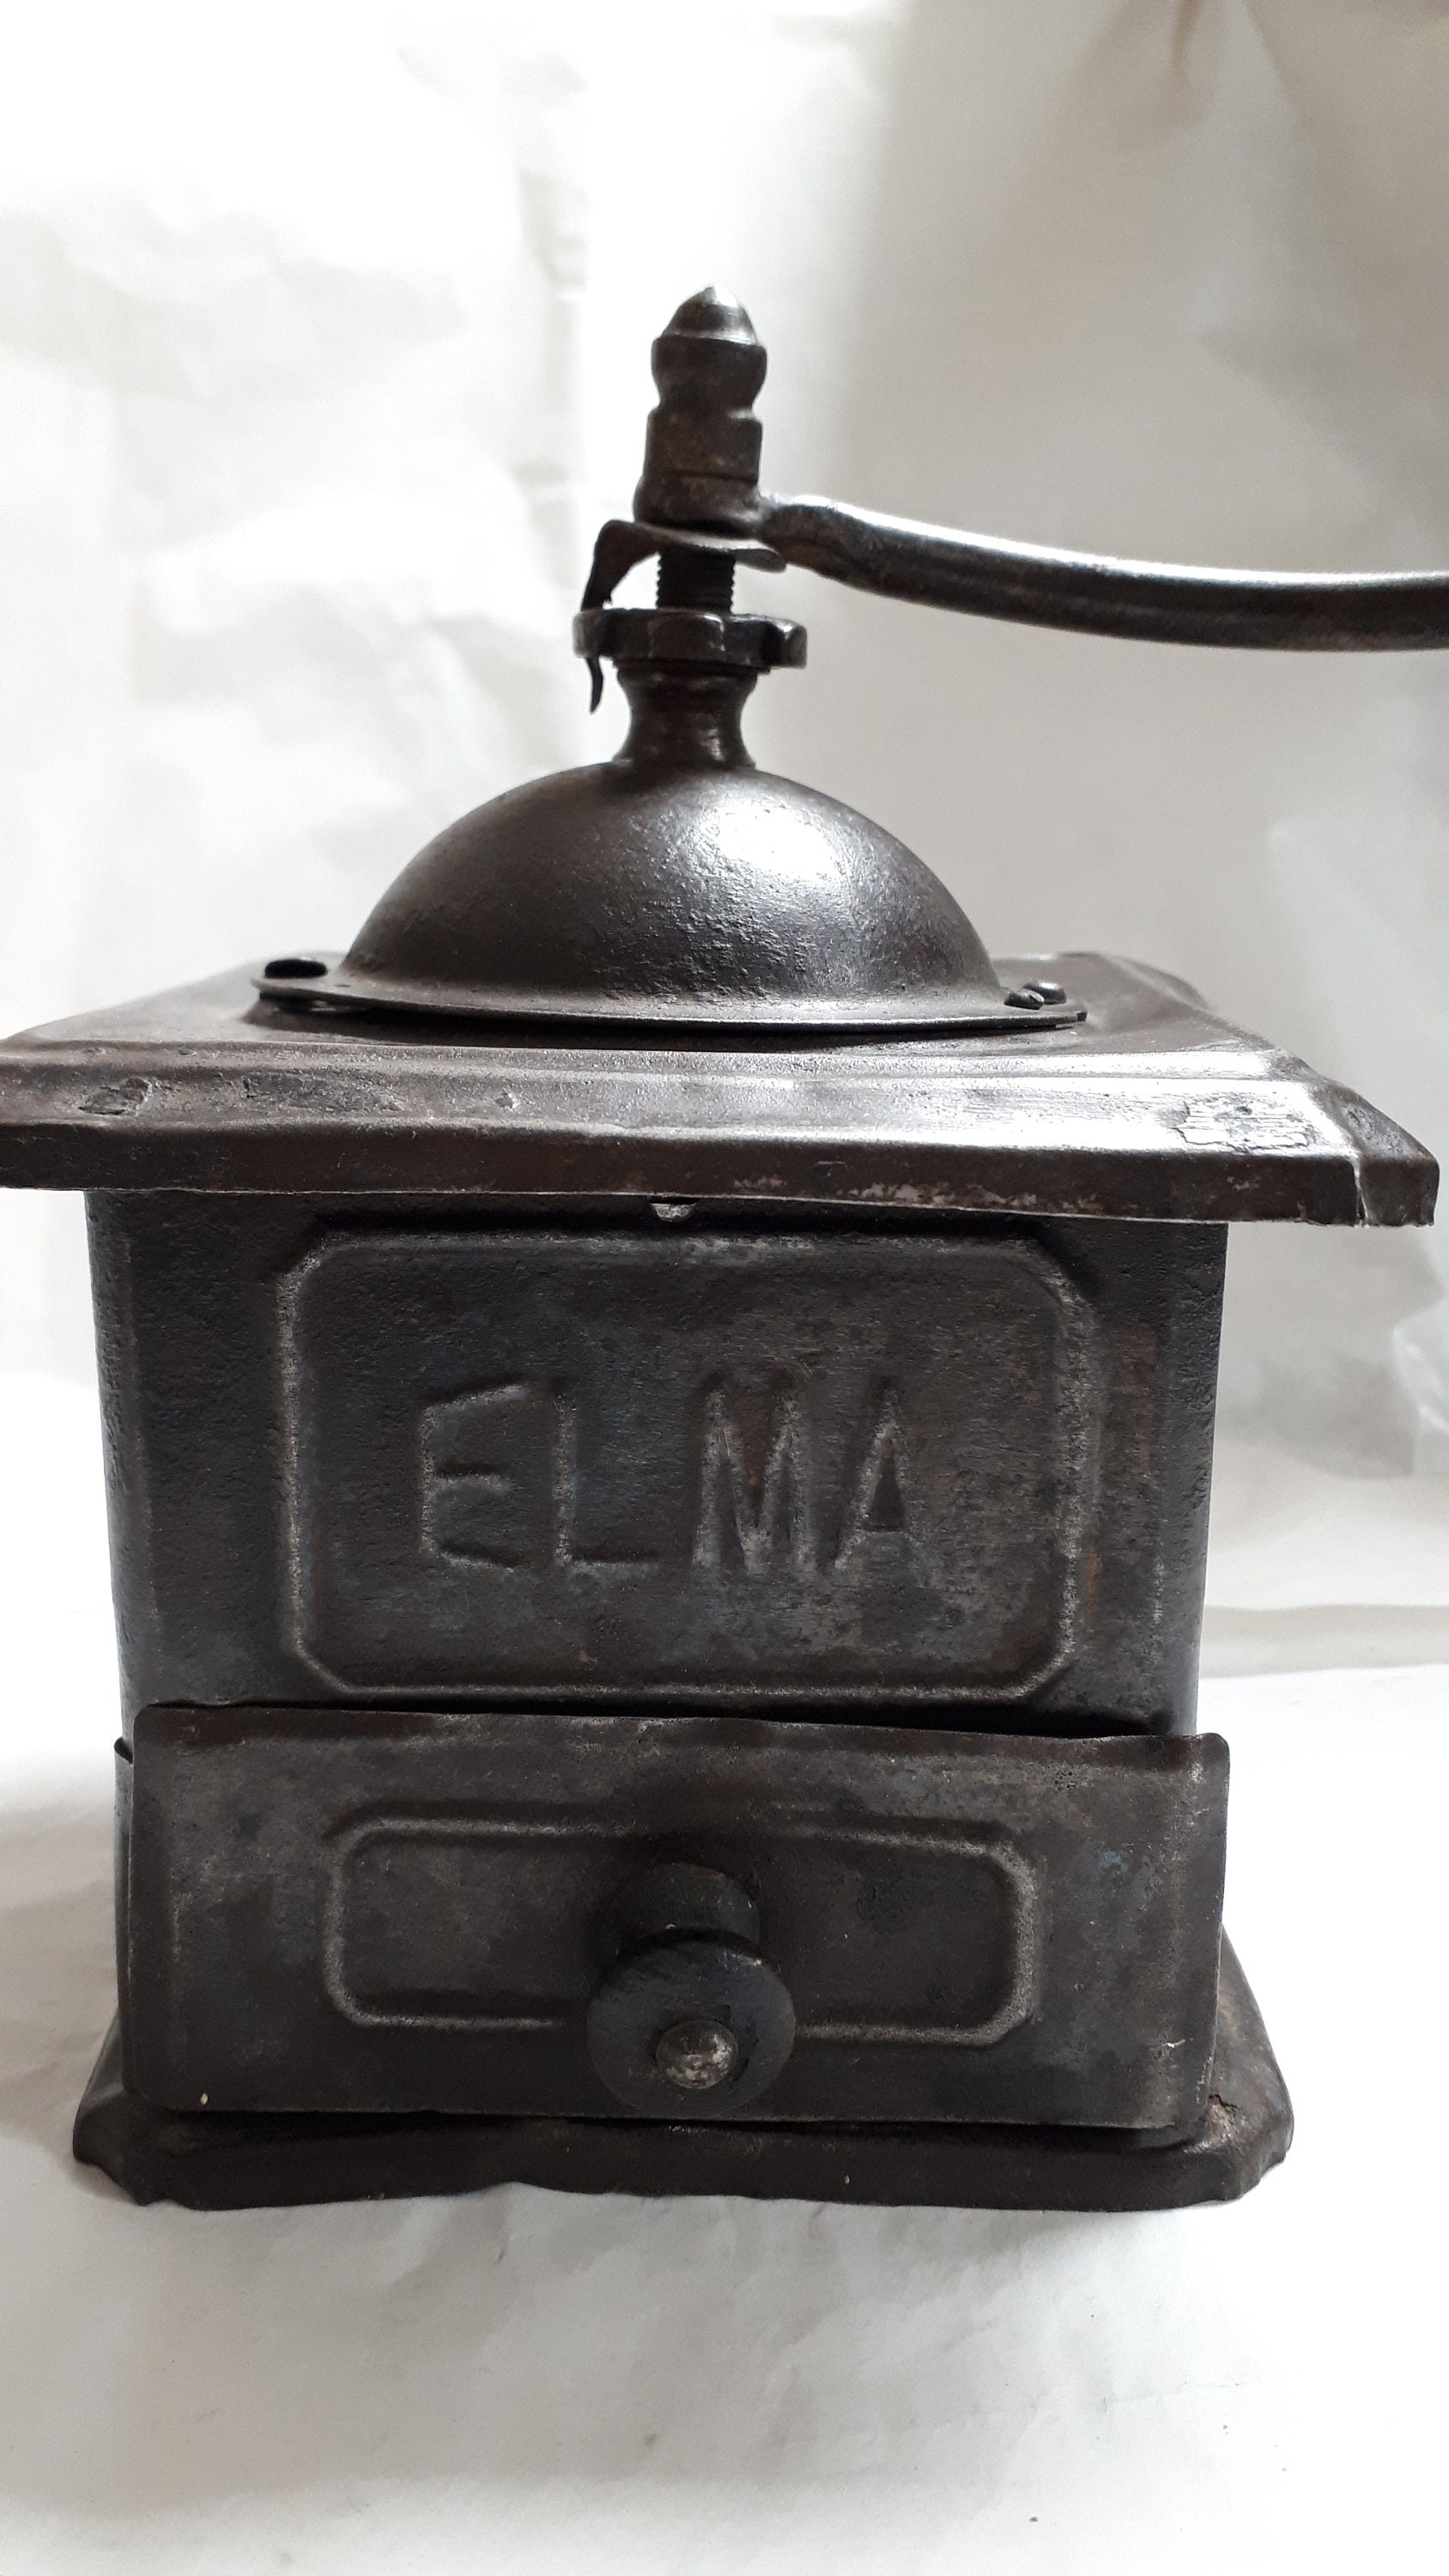 Elma, el molinillo de toda la vida para moler el café al momento